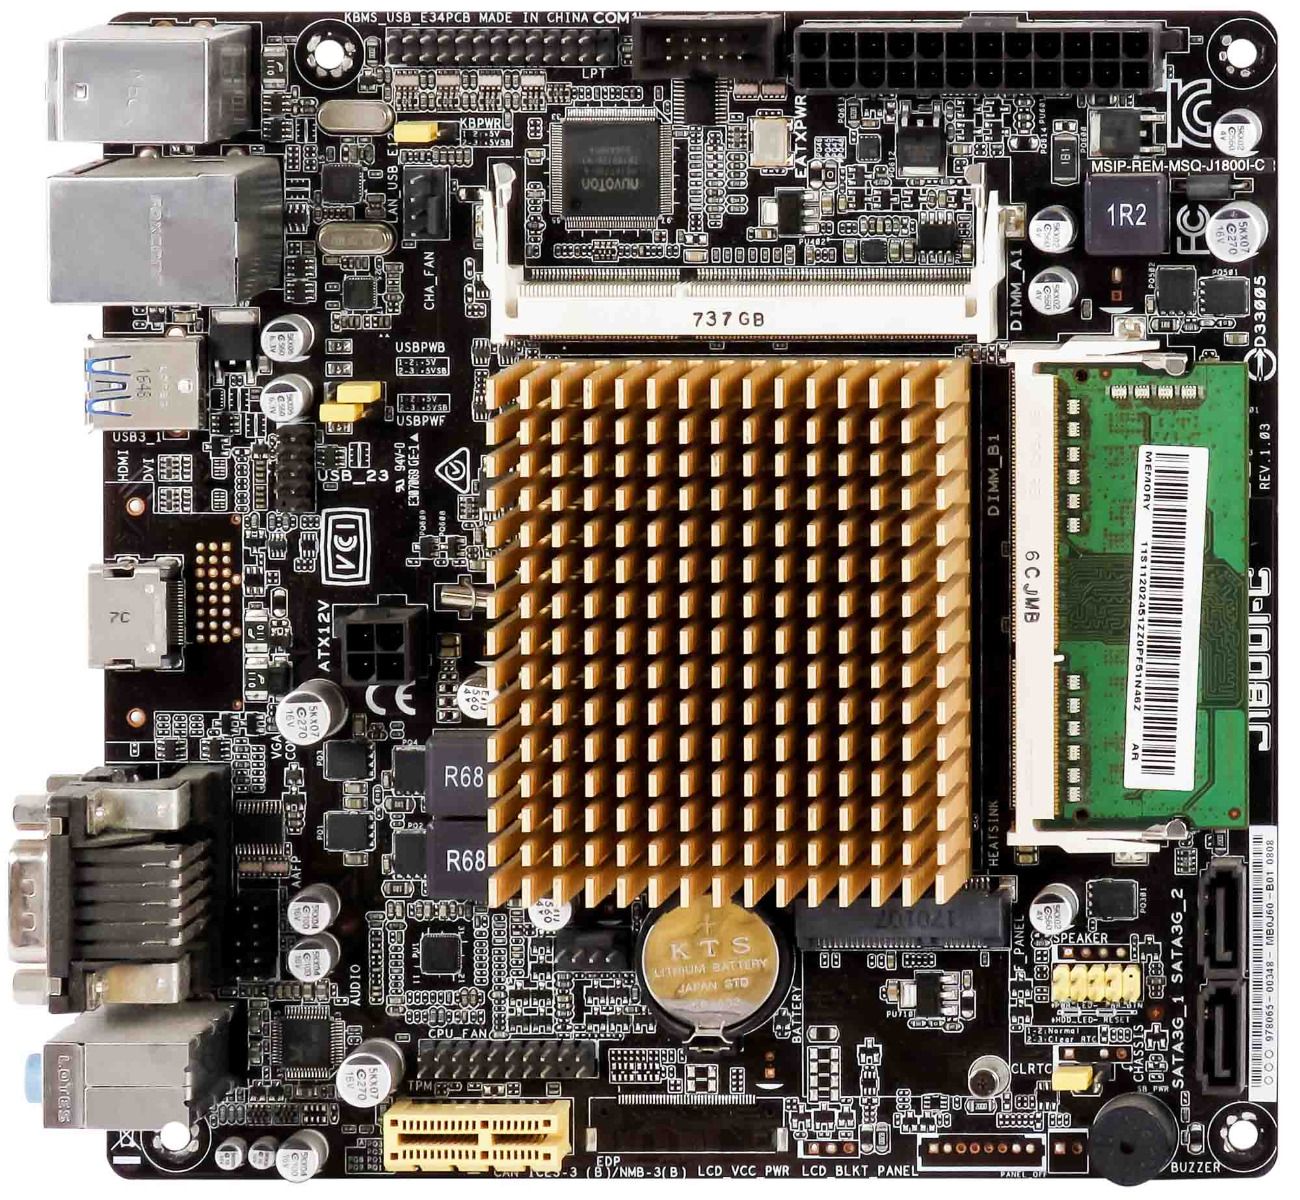 ASUS J1800I-C Intel Celeron J1800 2GB DDR3 mini ITX